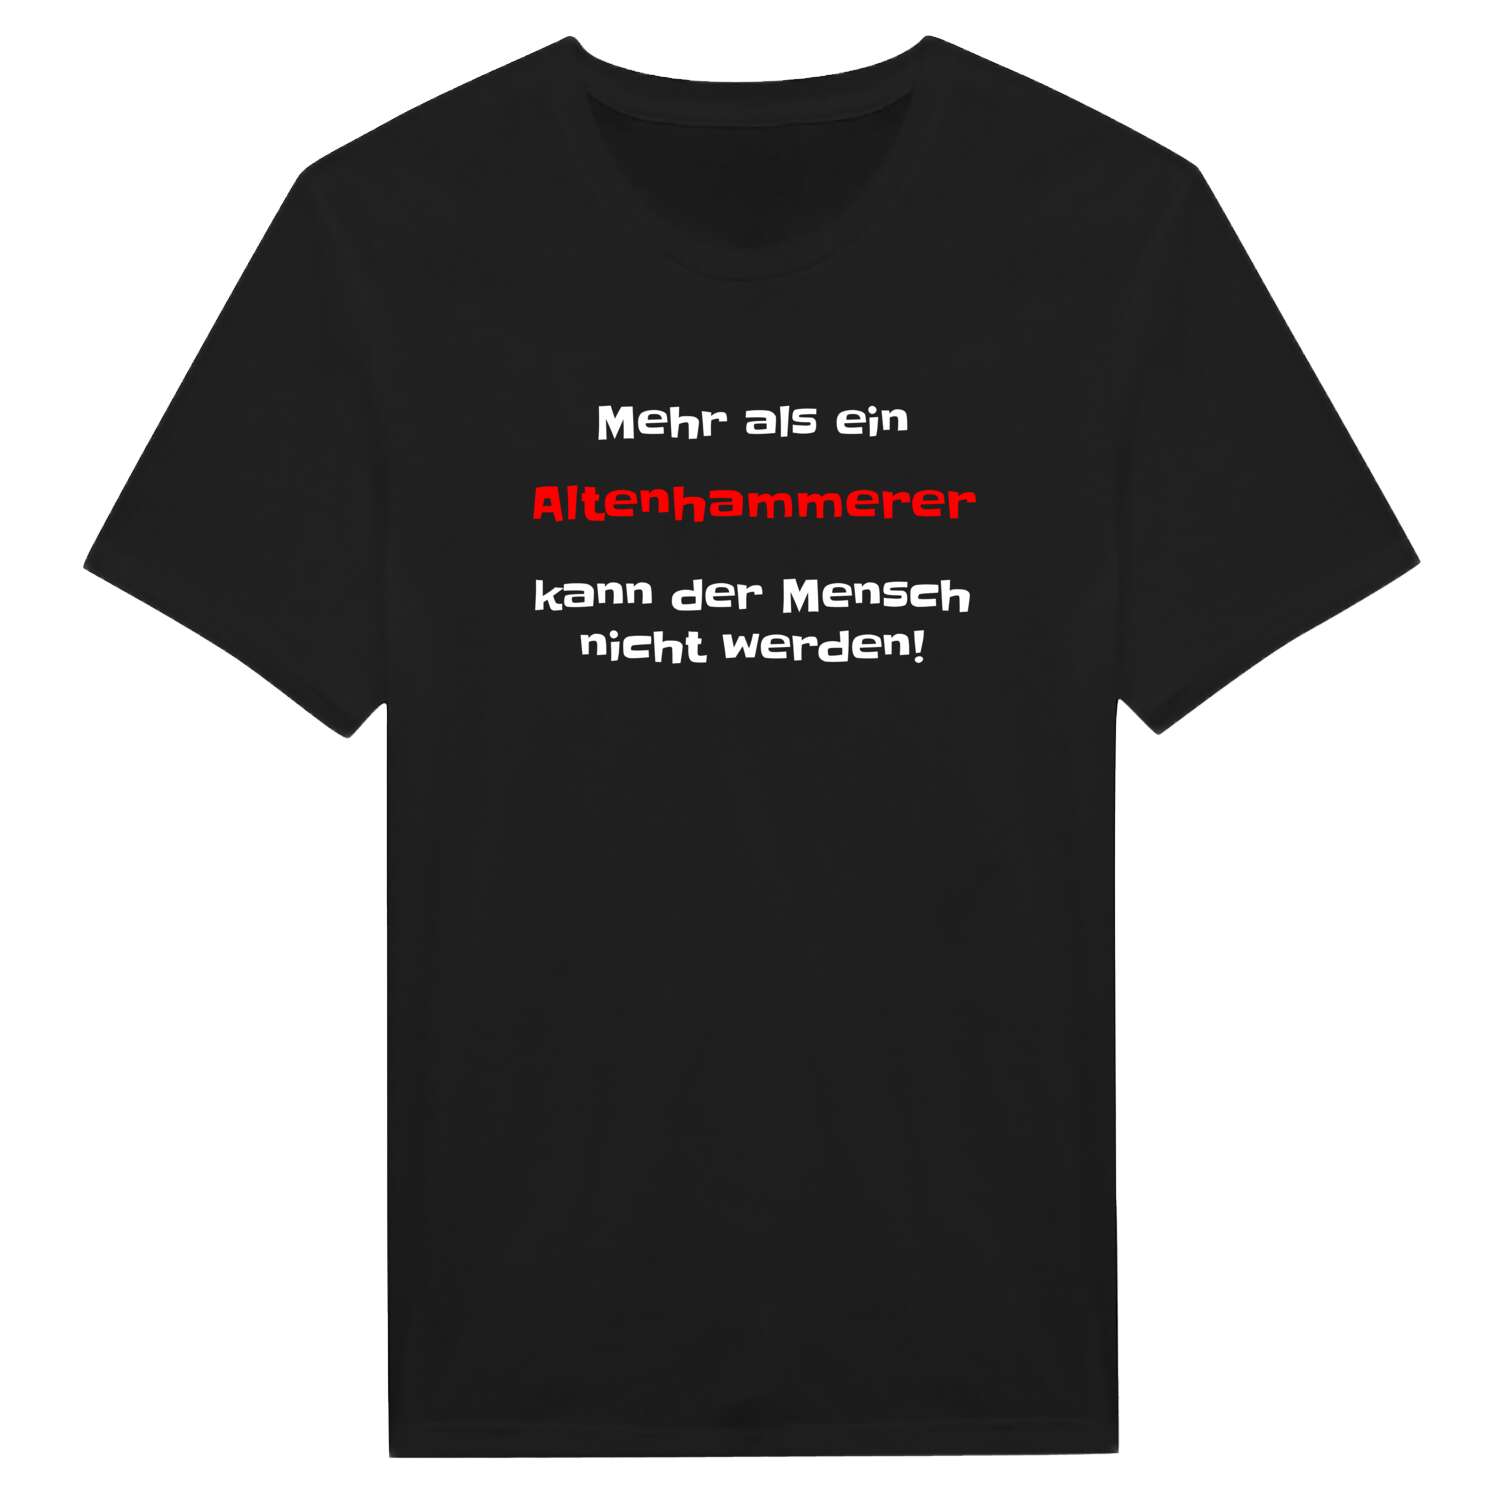 Altenhammer T-Shirt »Mehr als ein«